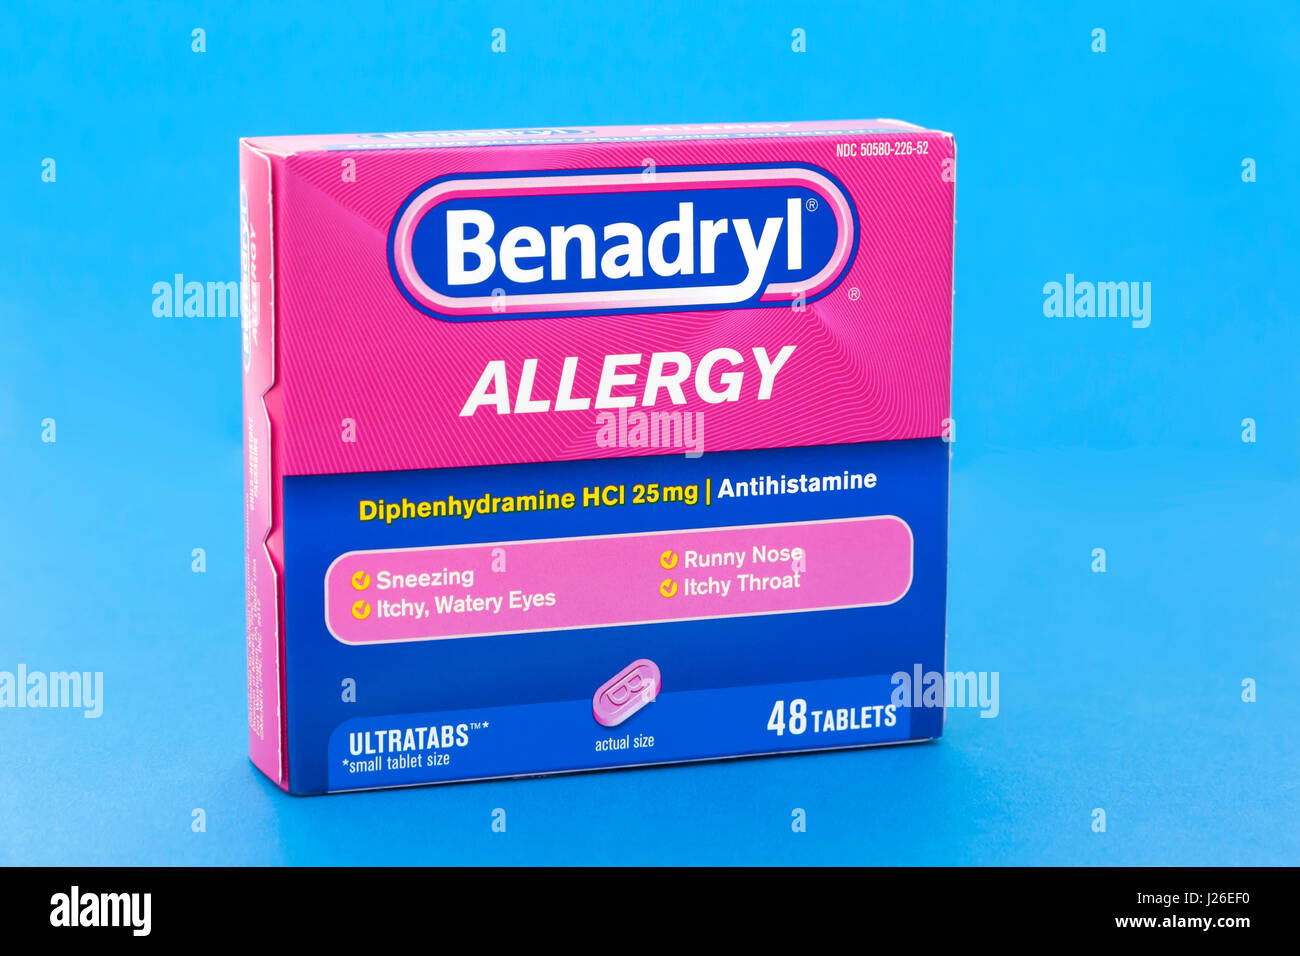 Benadryl Allergy tablets en una caja. Foto de stock